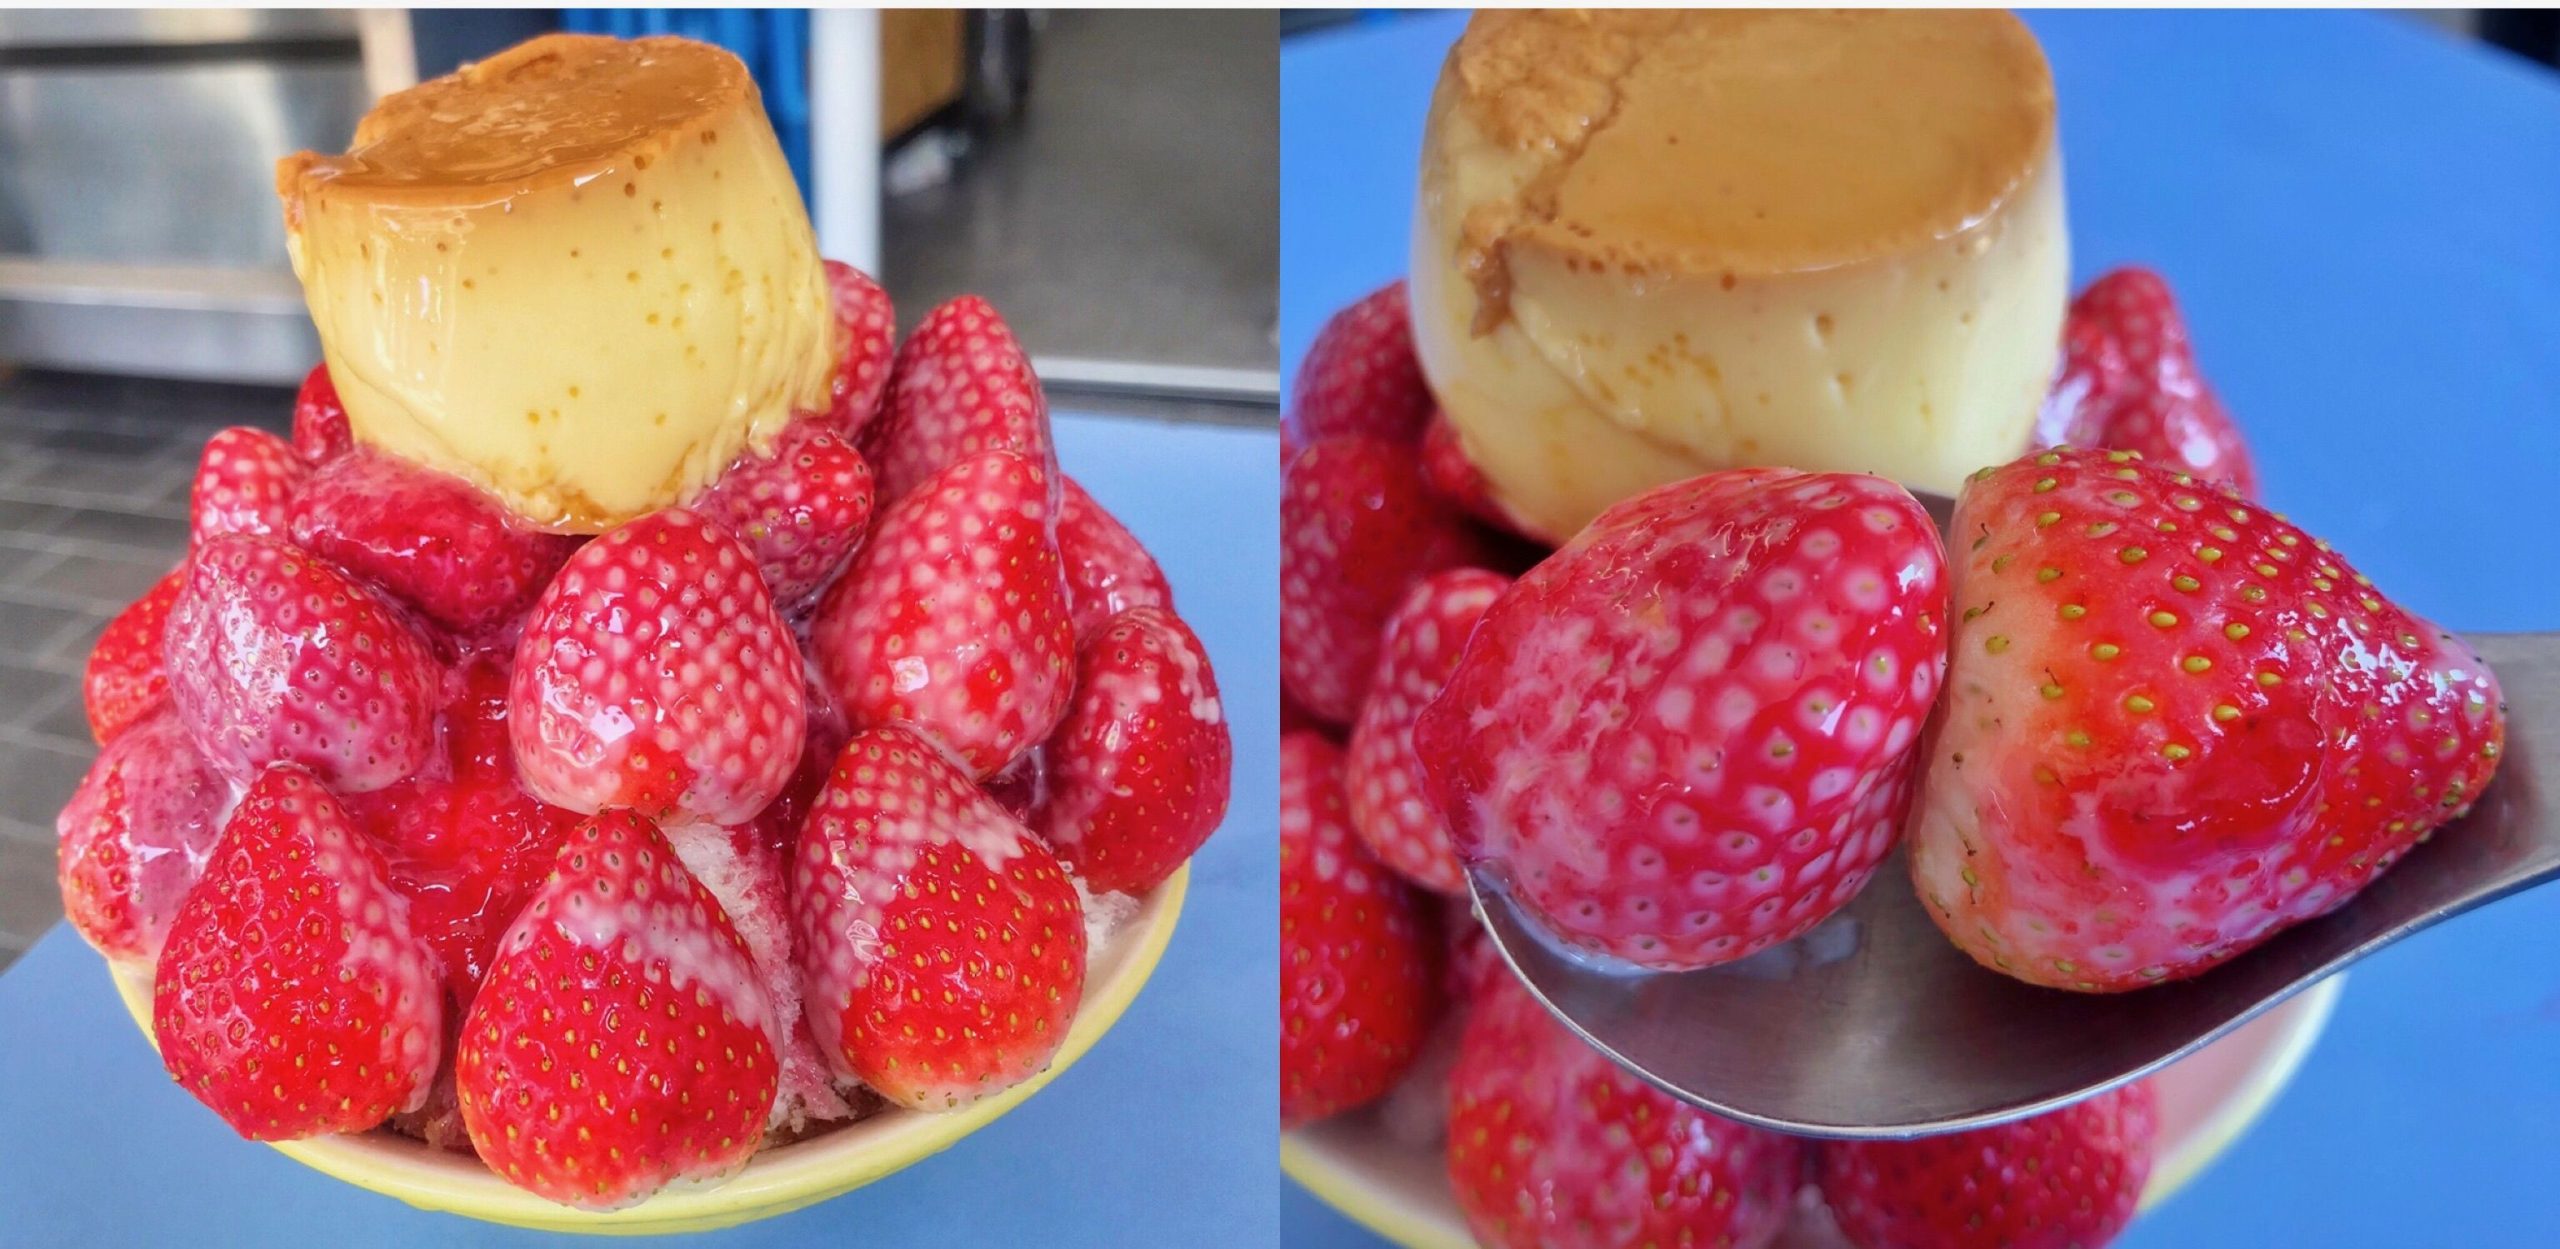 【台南東區美食】木子家八寶冰 草莓煉乳冰 20顆草莓130元酸甜滋味好幸福 加布丁更好吃